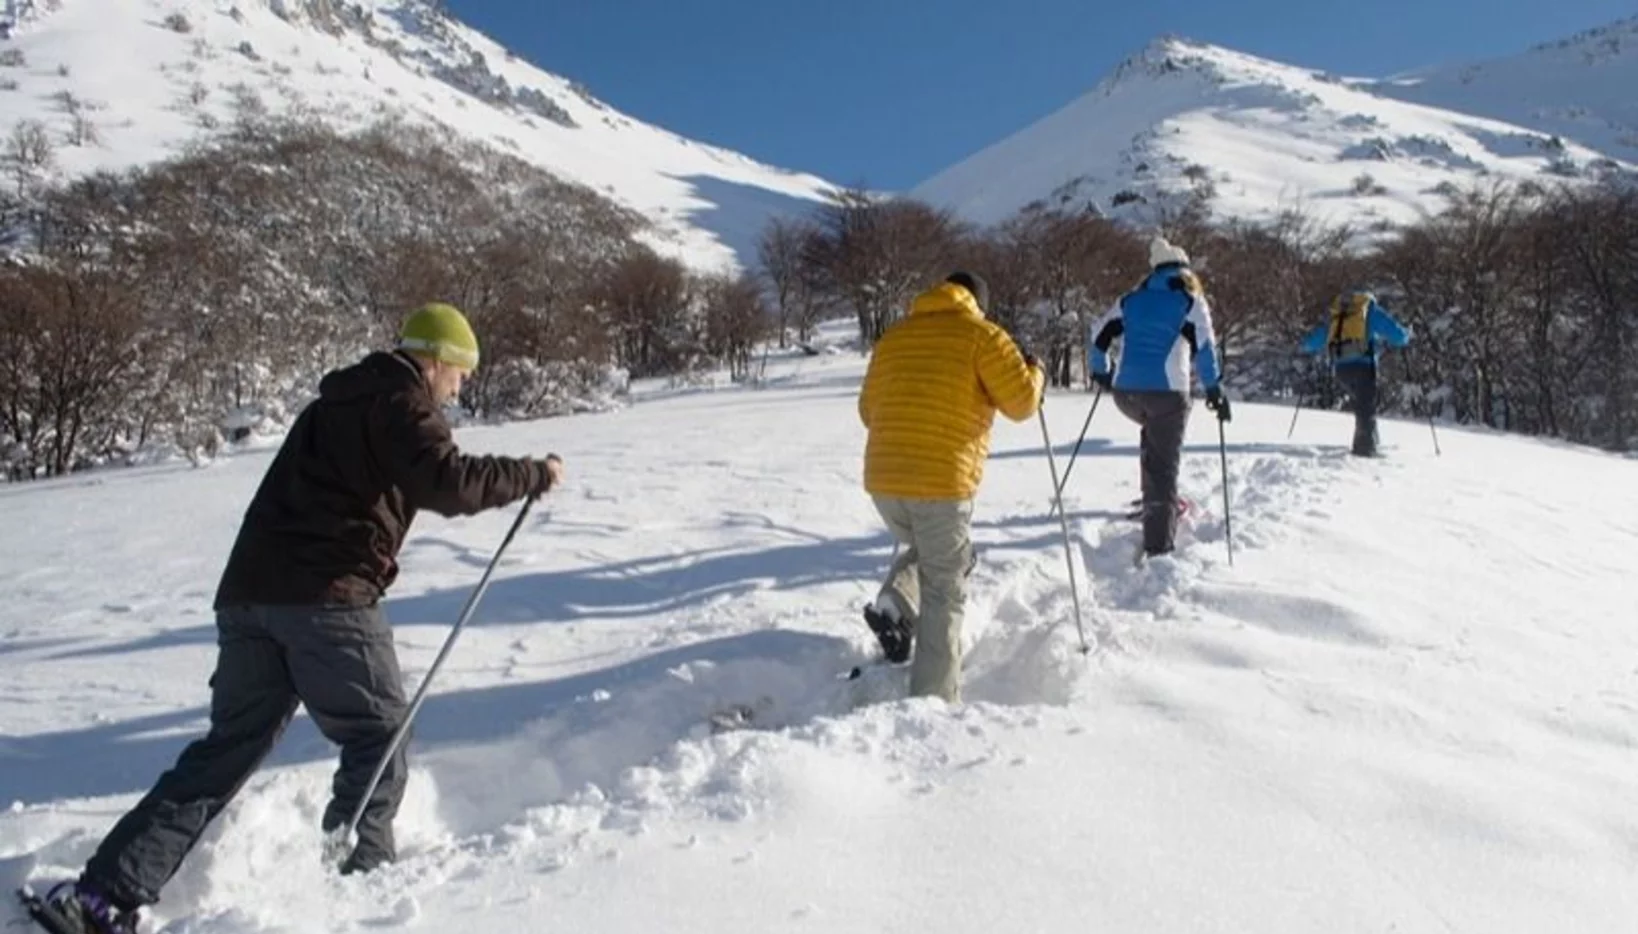  Municipio y Provincia lanzan temporada turística  de invierno en el centro de esquí La Hoya